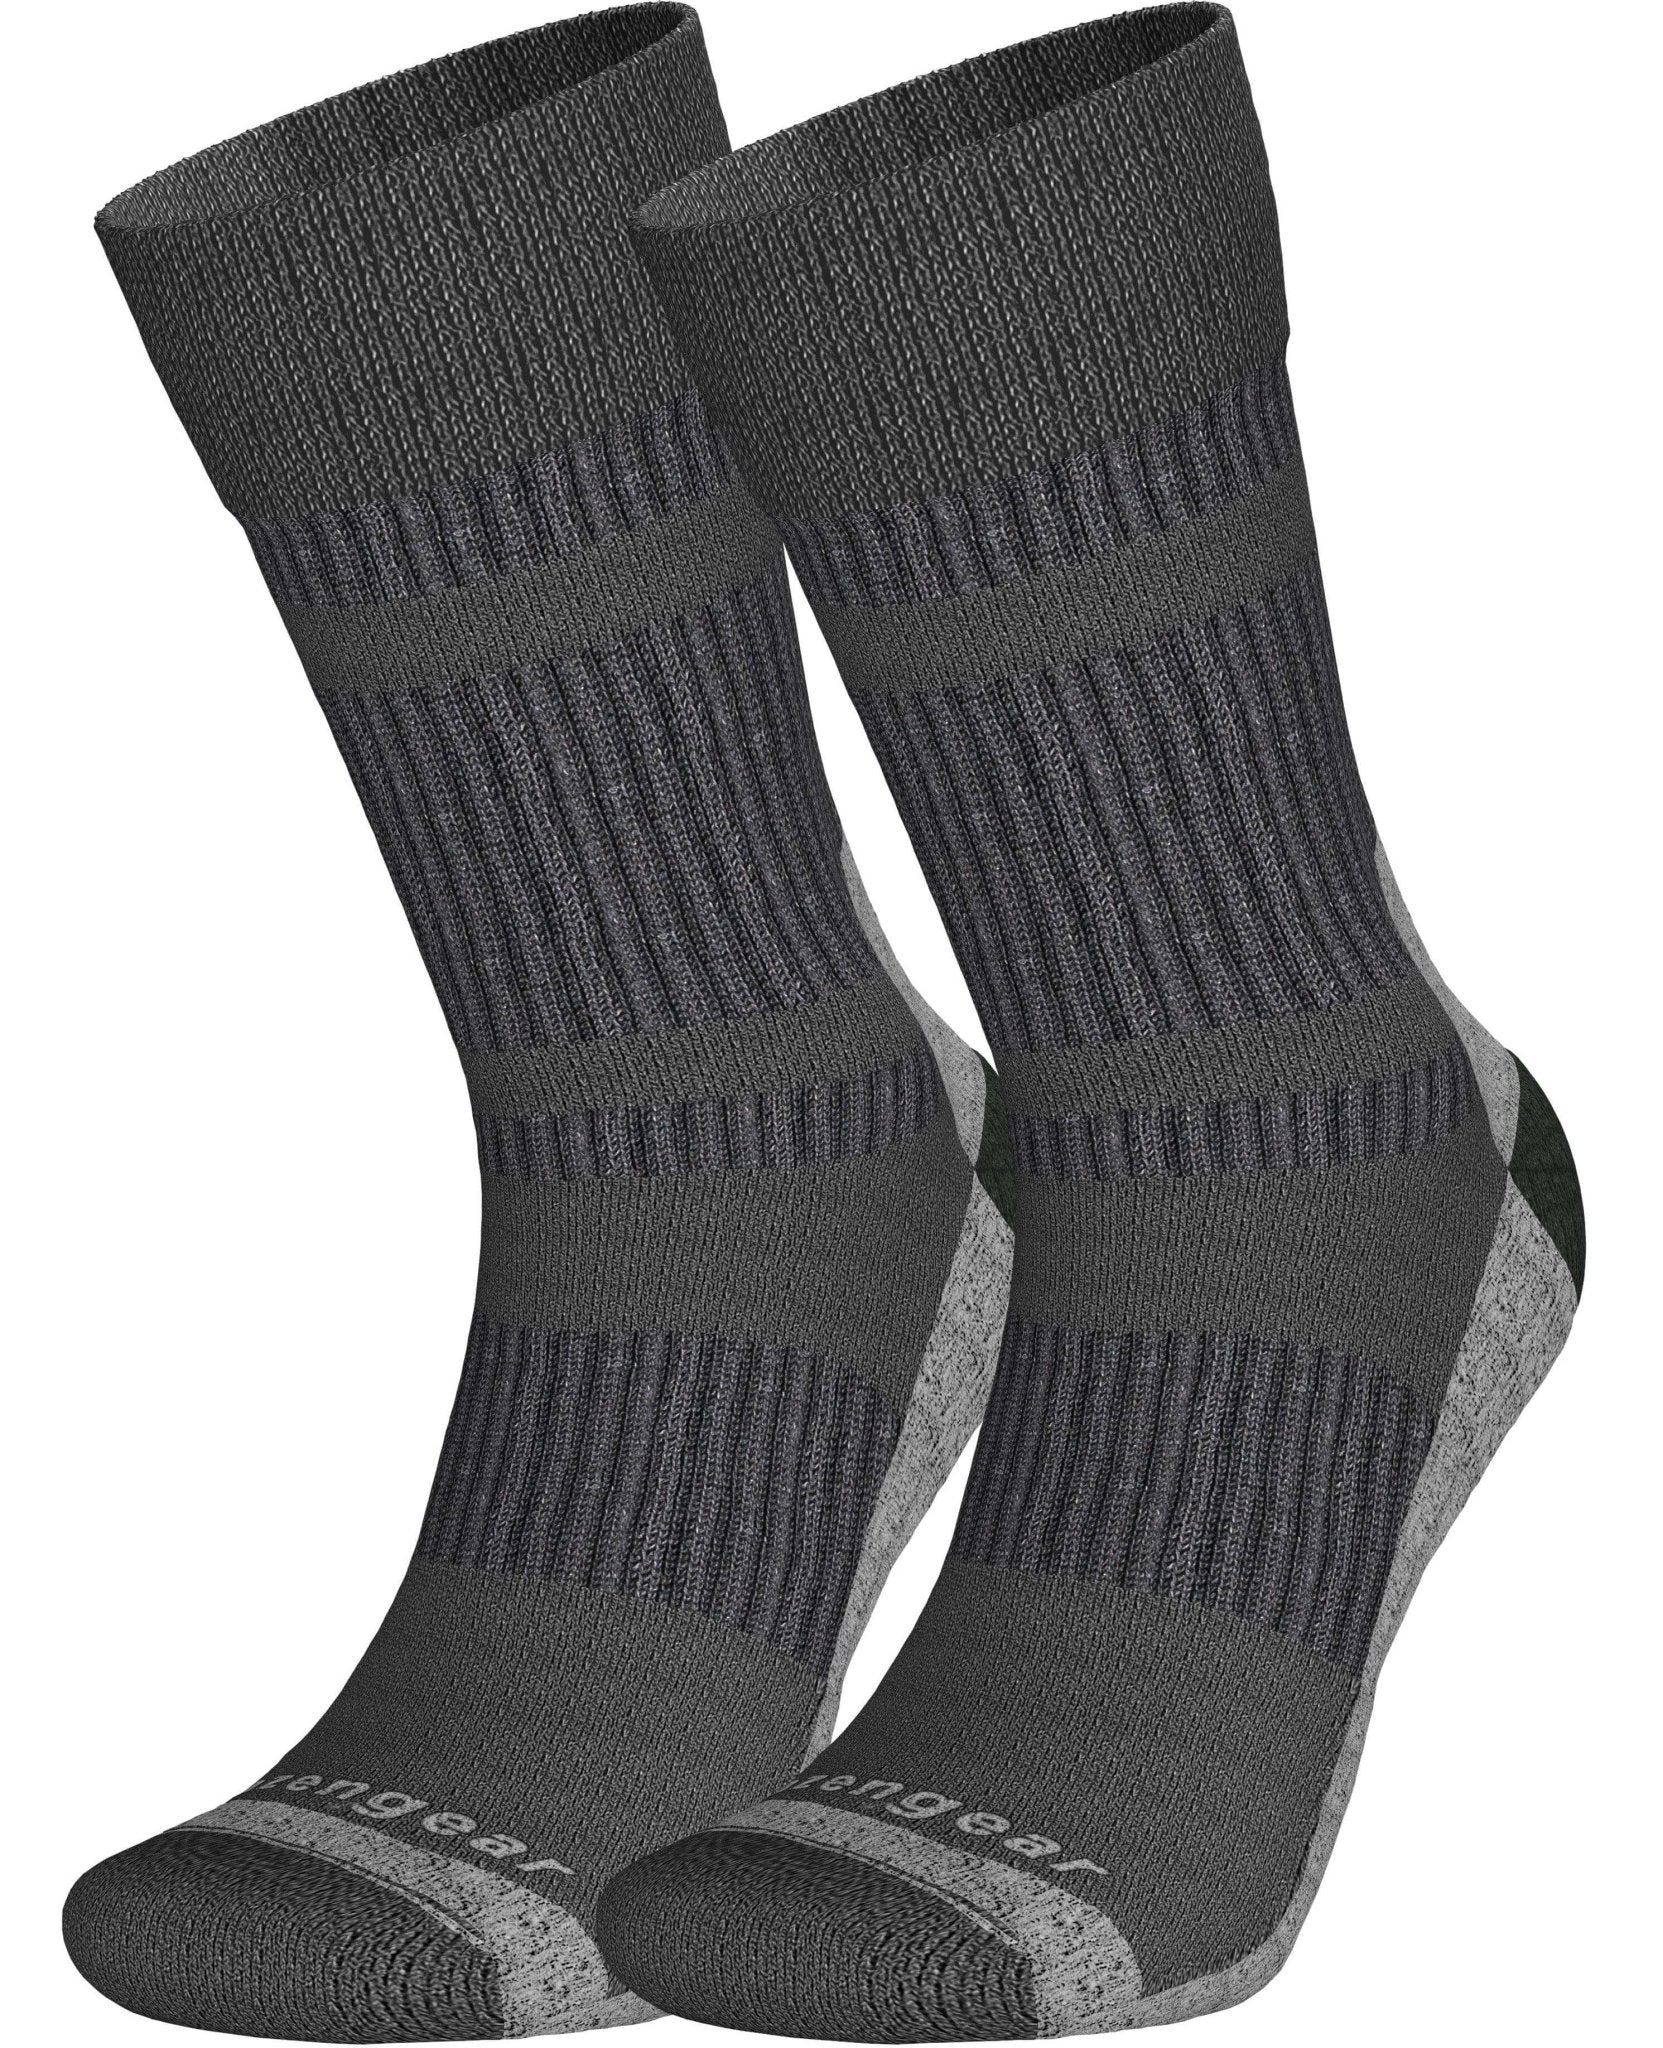 Coolmax & Merino Wool Walking Socks for Men & Women - aZengear